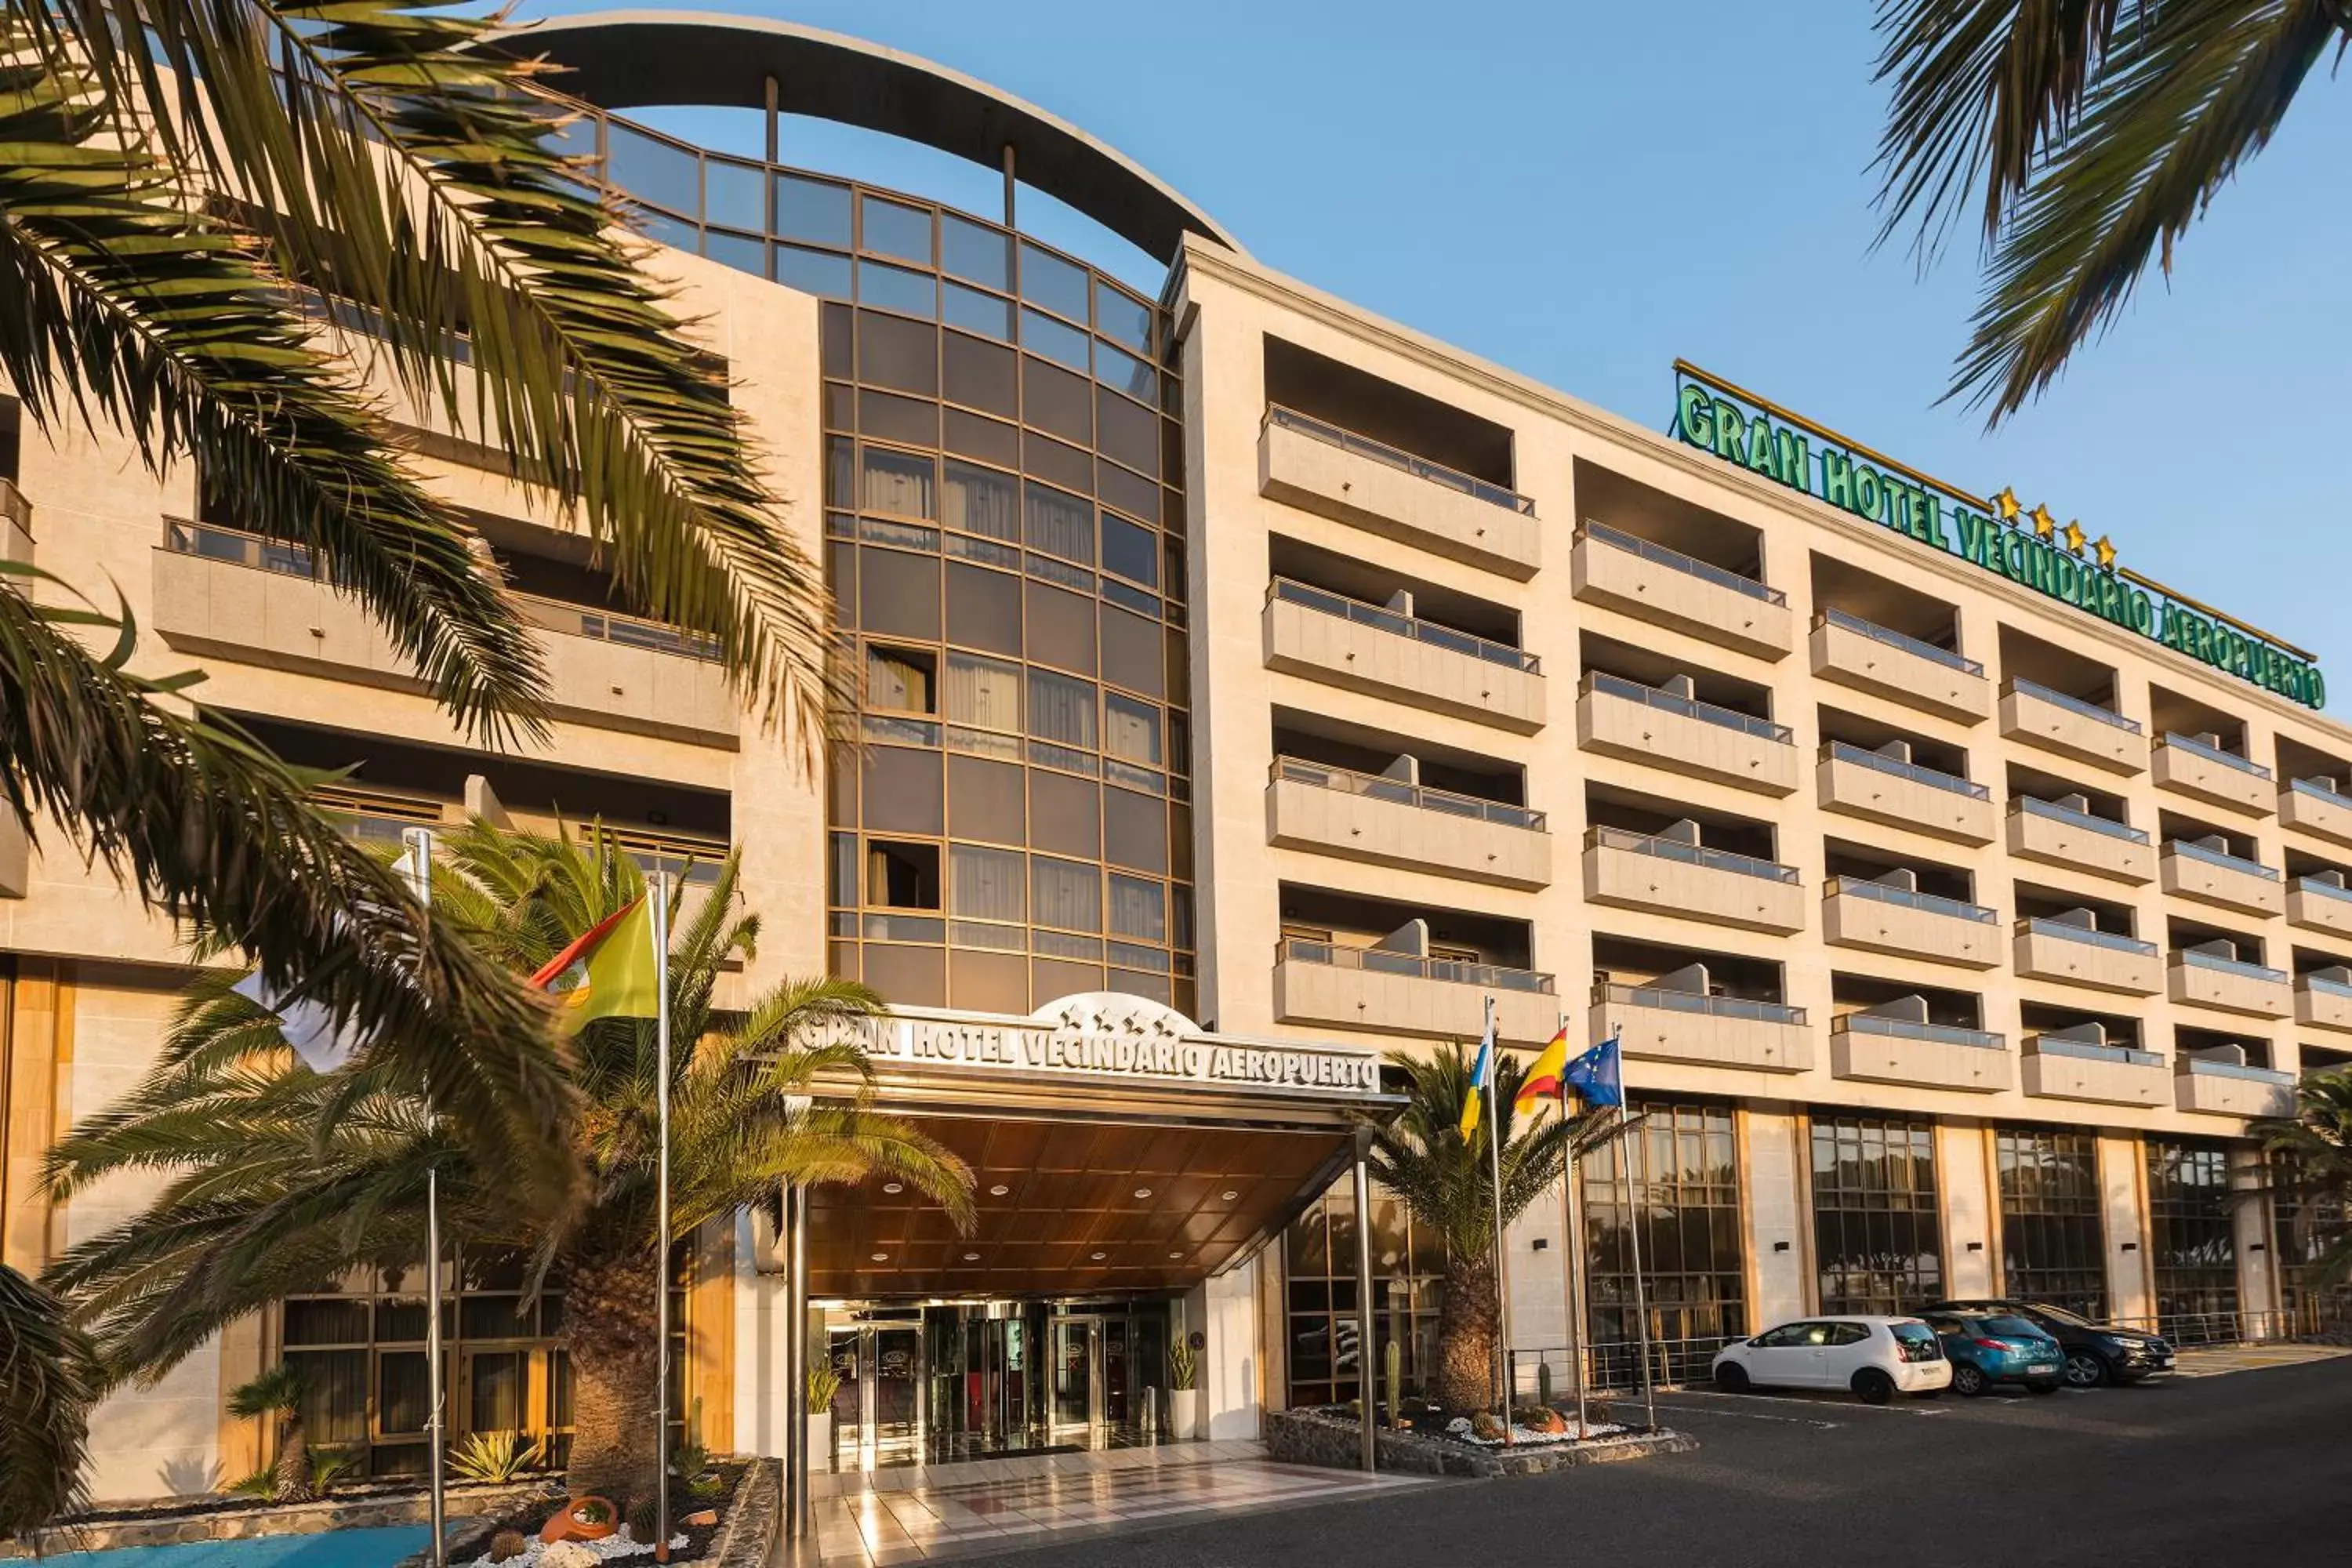 Facade/entrance, Property Building in Elba Vecindario Aeropuerto Business & Convention Hotel